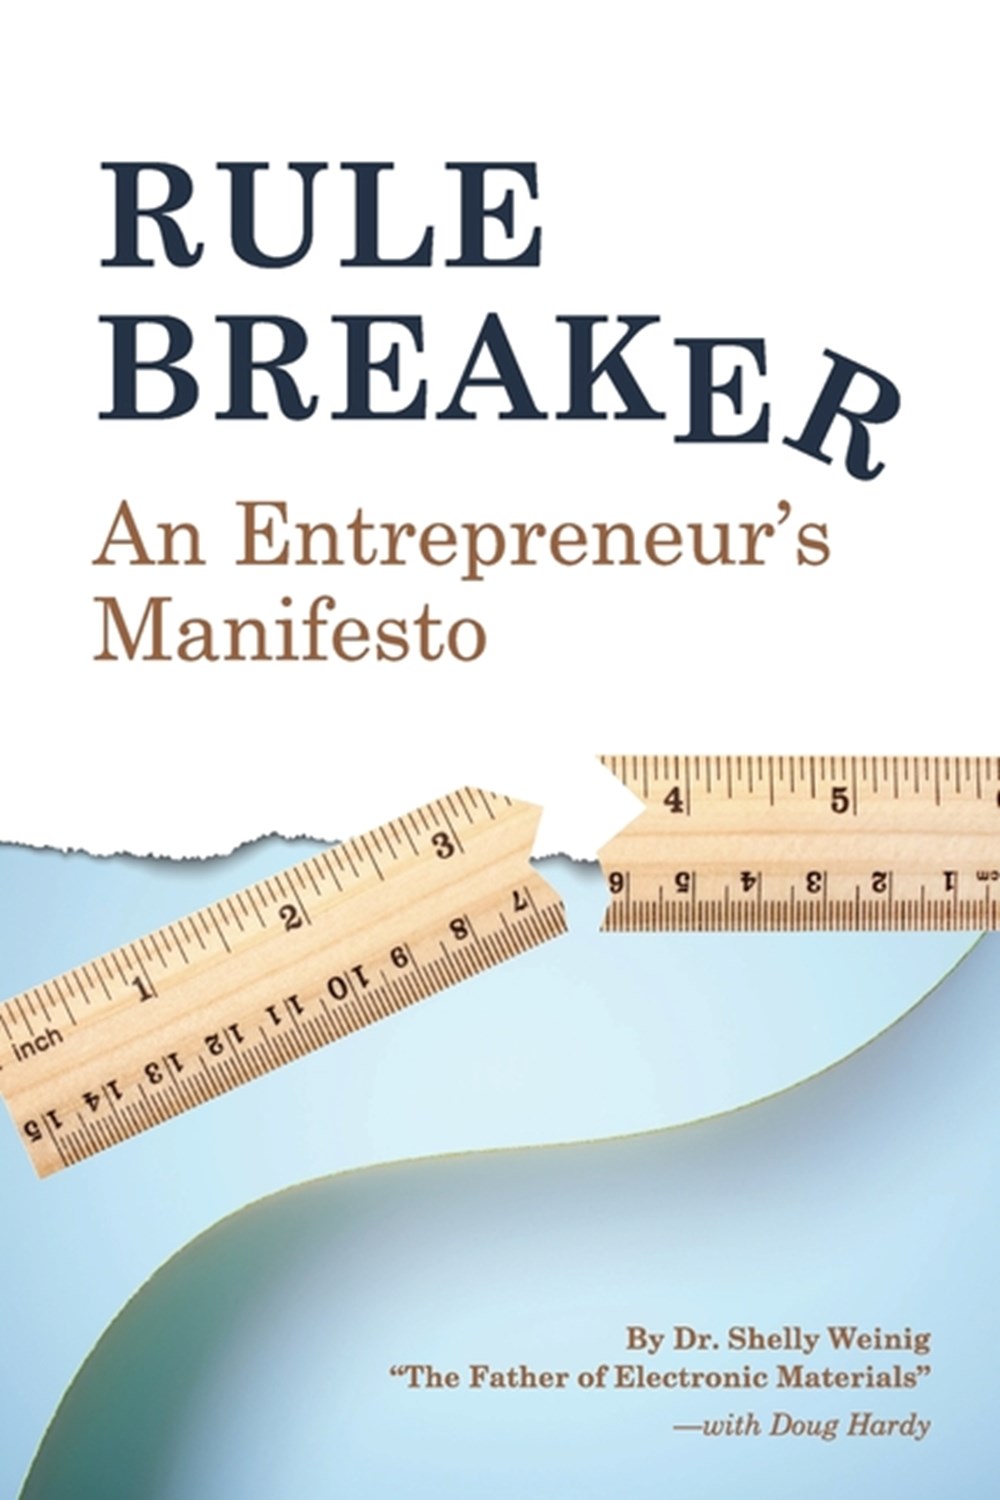 Rule Breaker An Entrepreneur's Manifesto